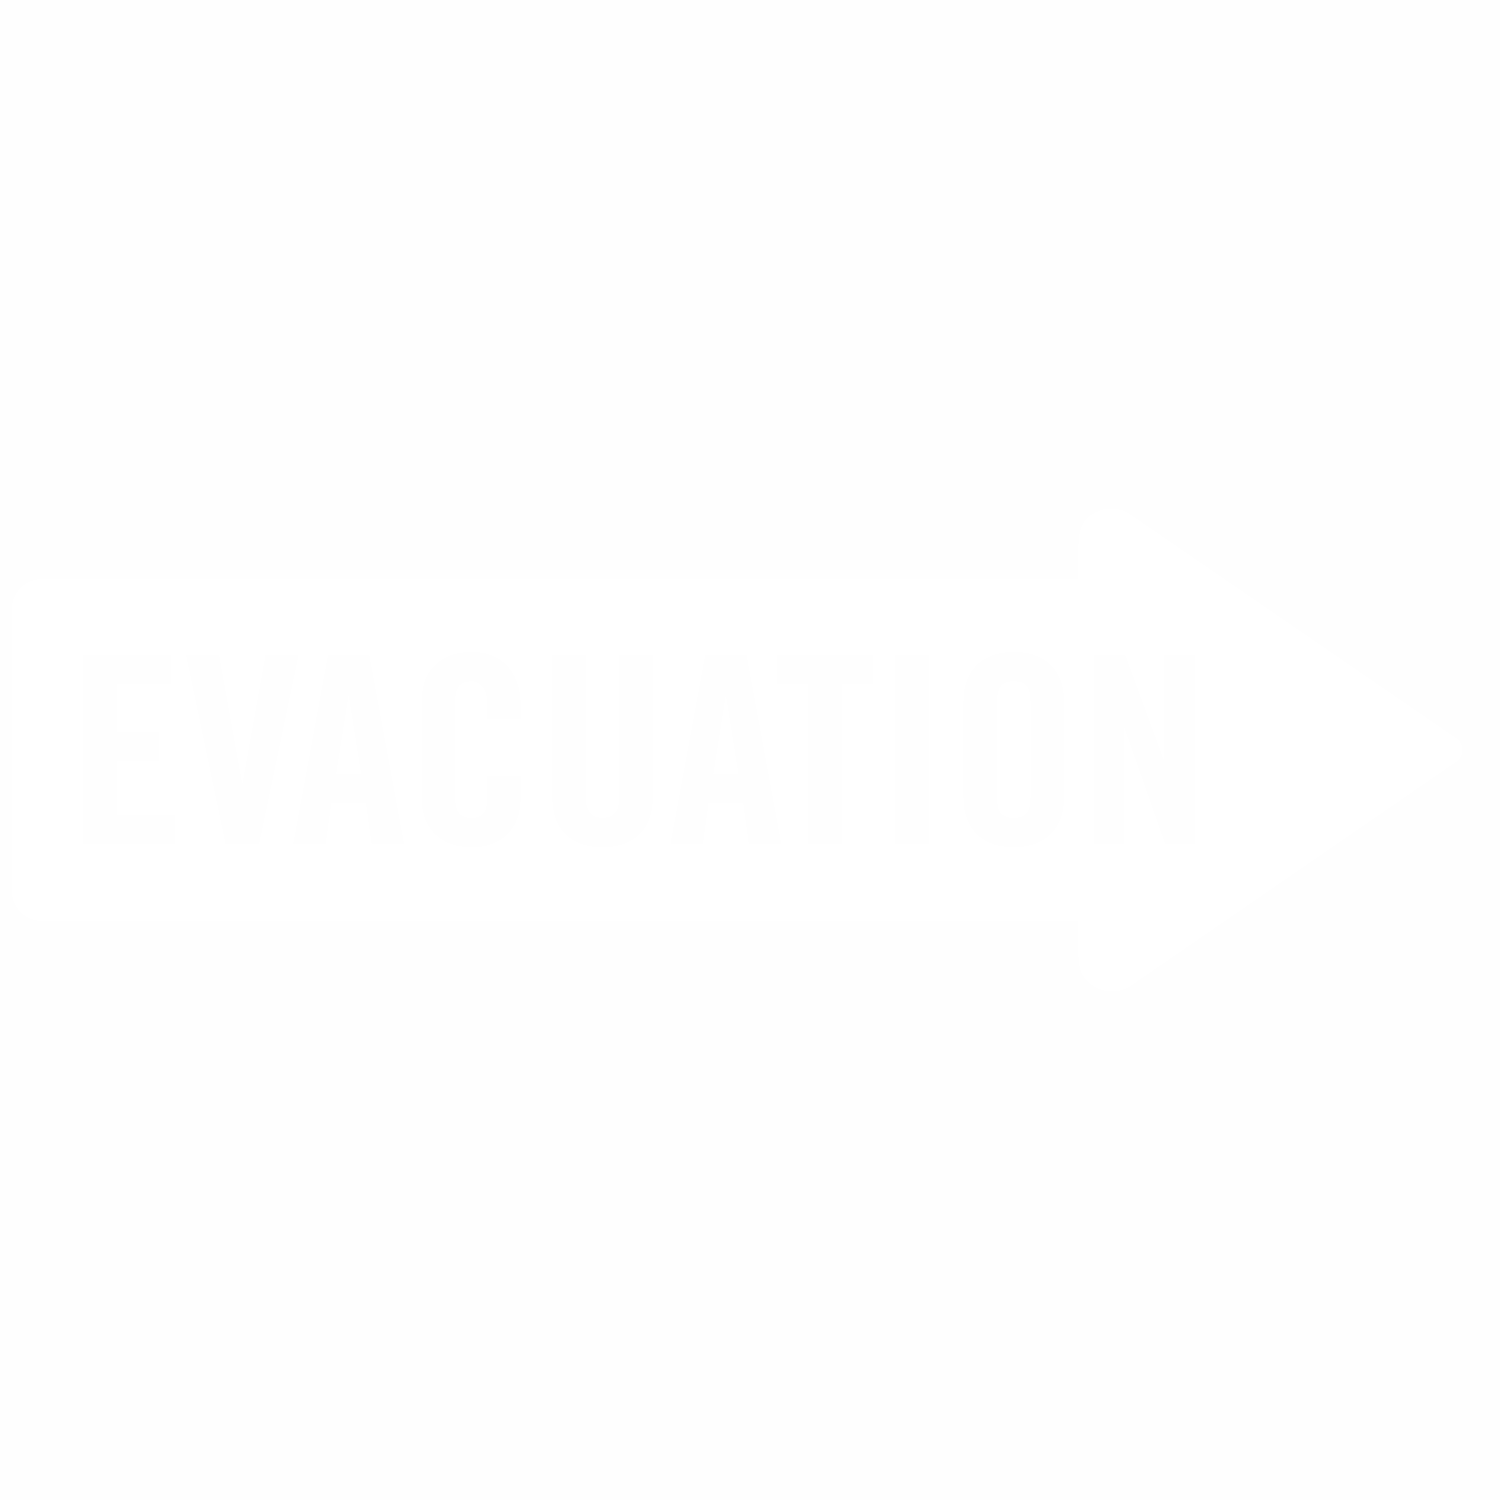 Evacuation, Thin Arrow